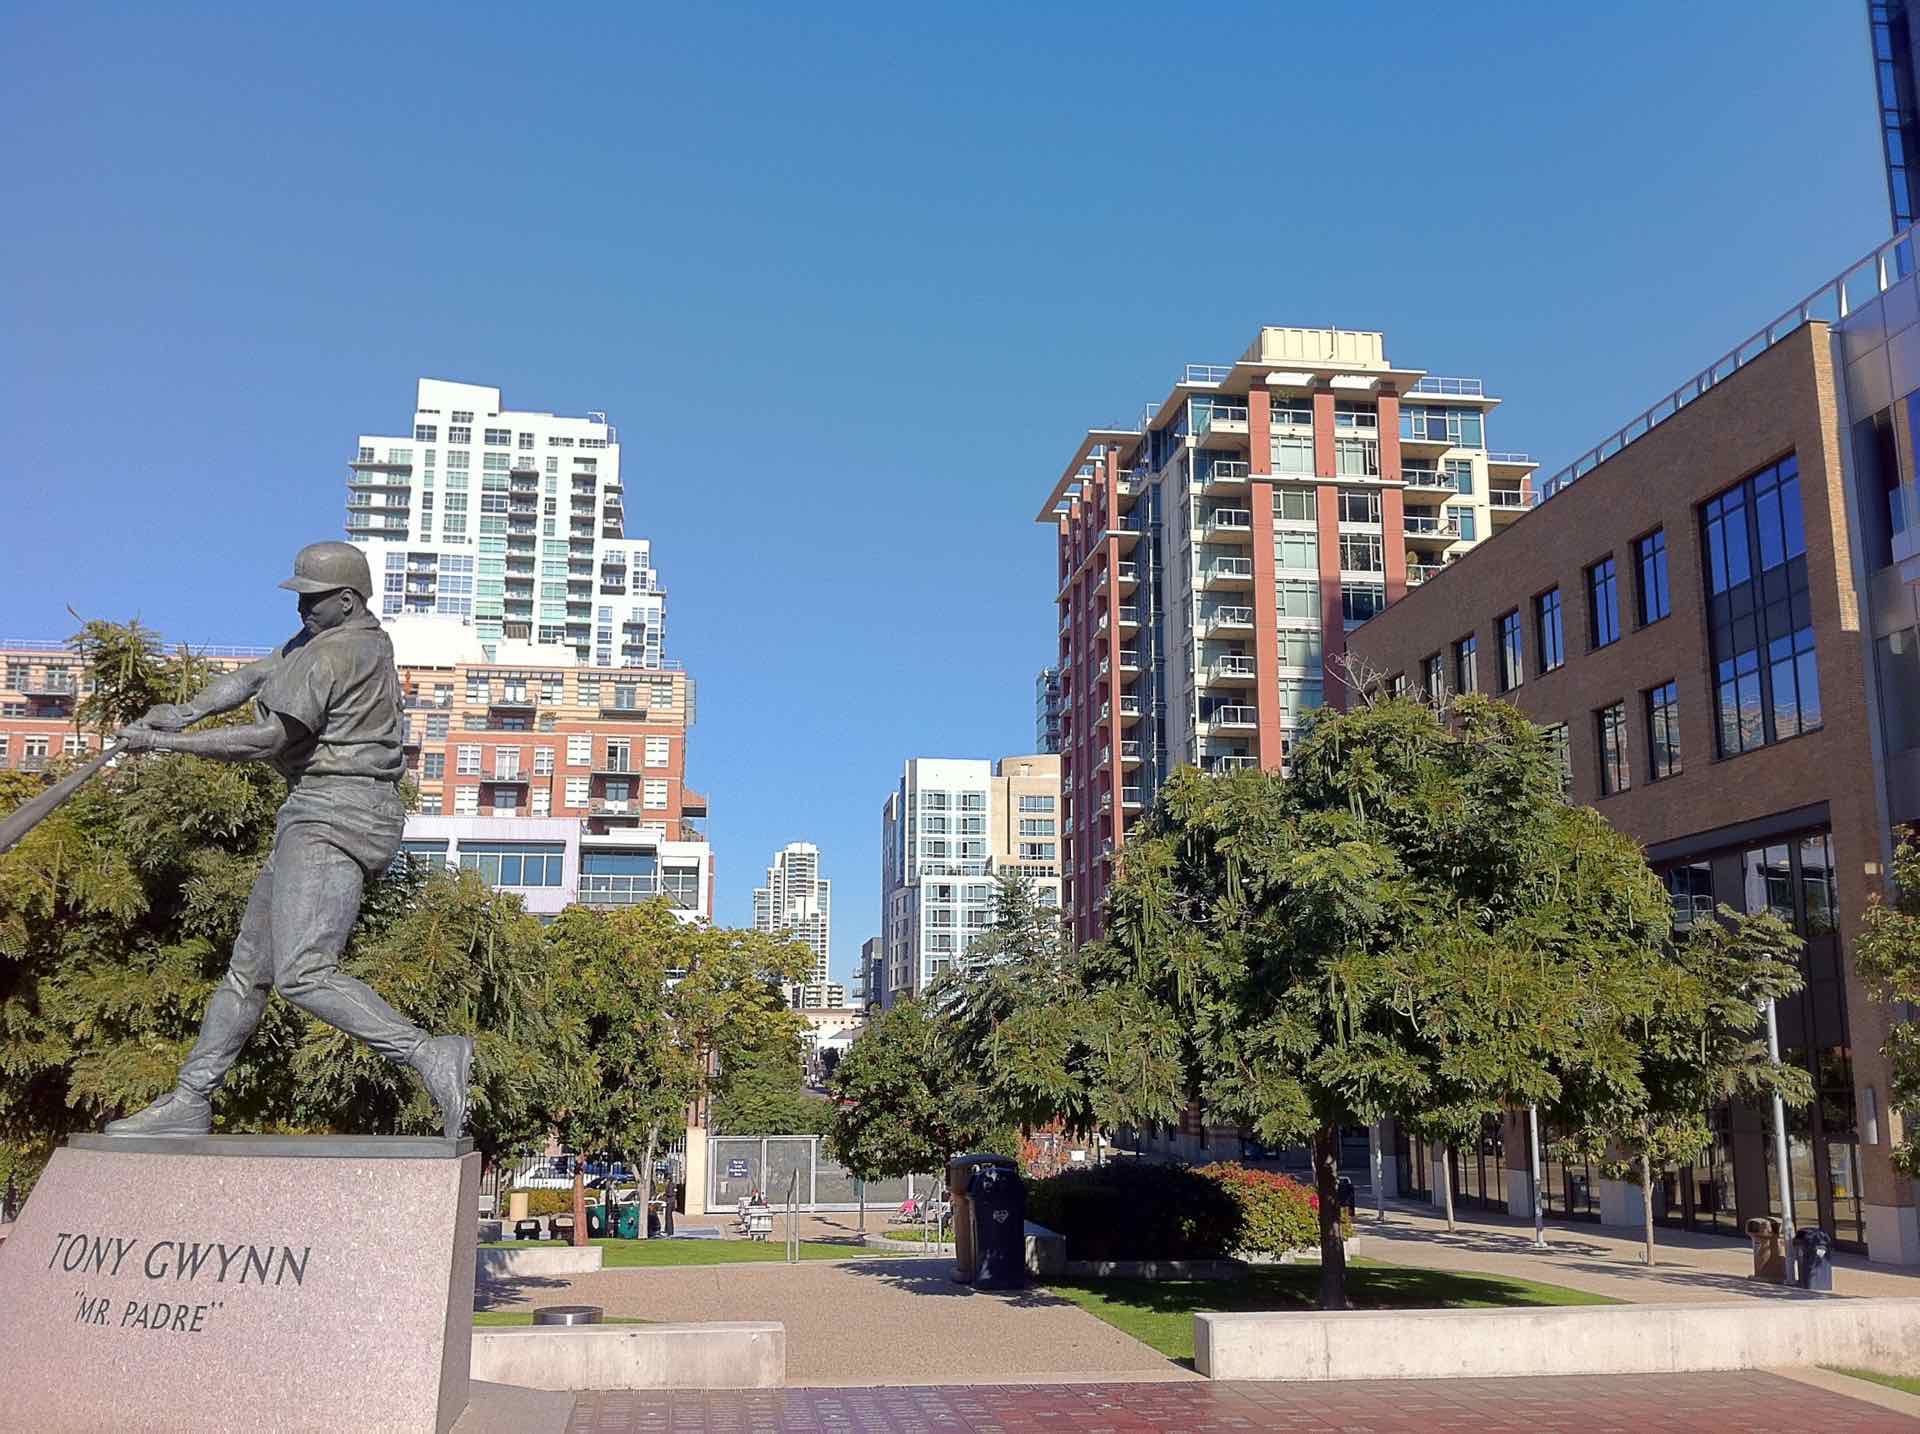 Tony Gwynn Statue in San Diego